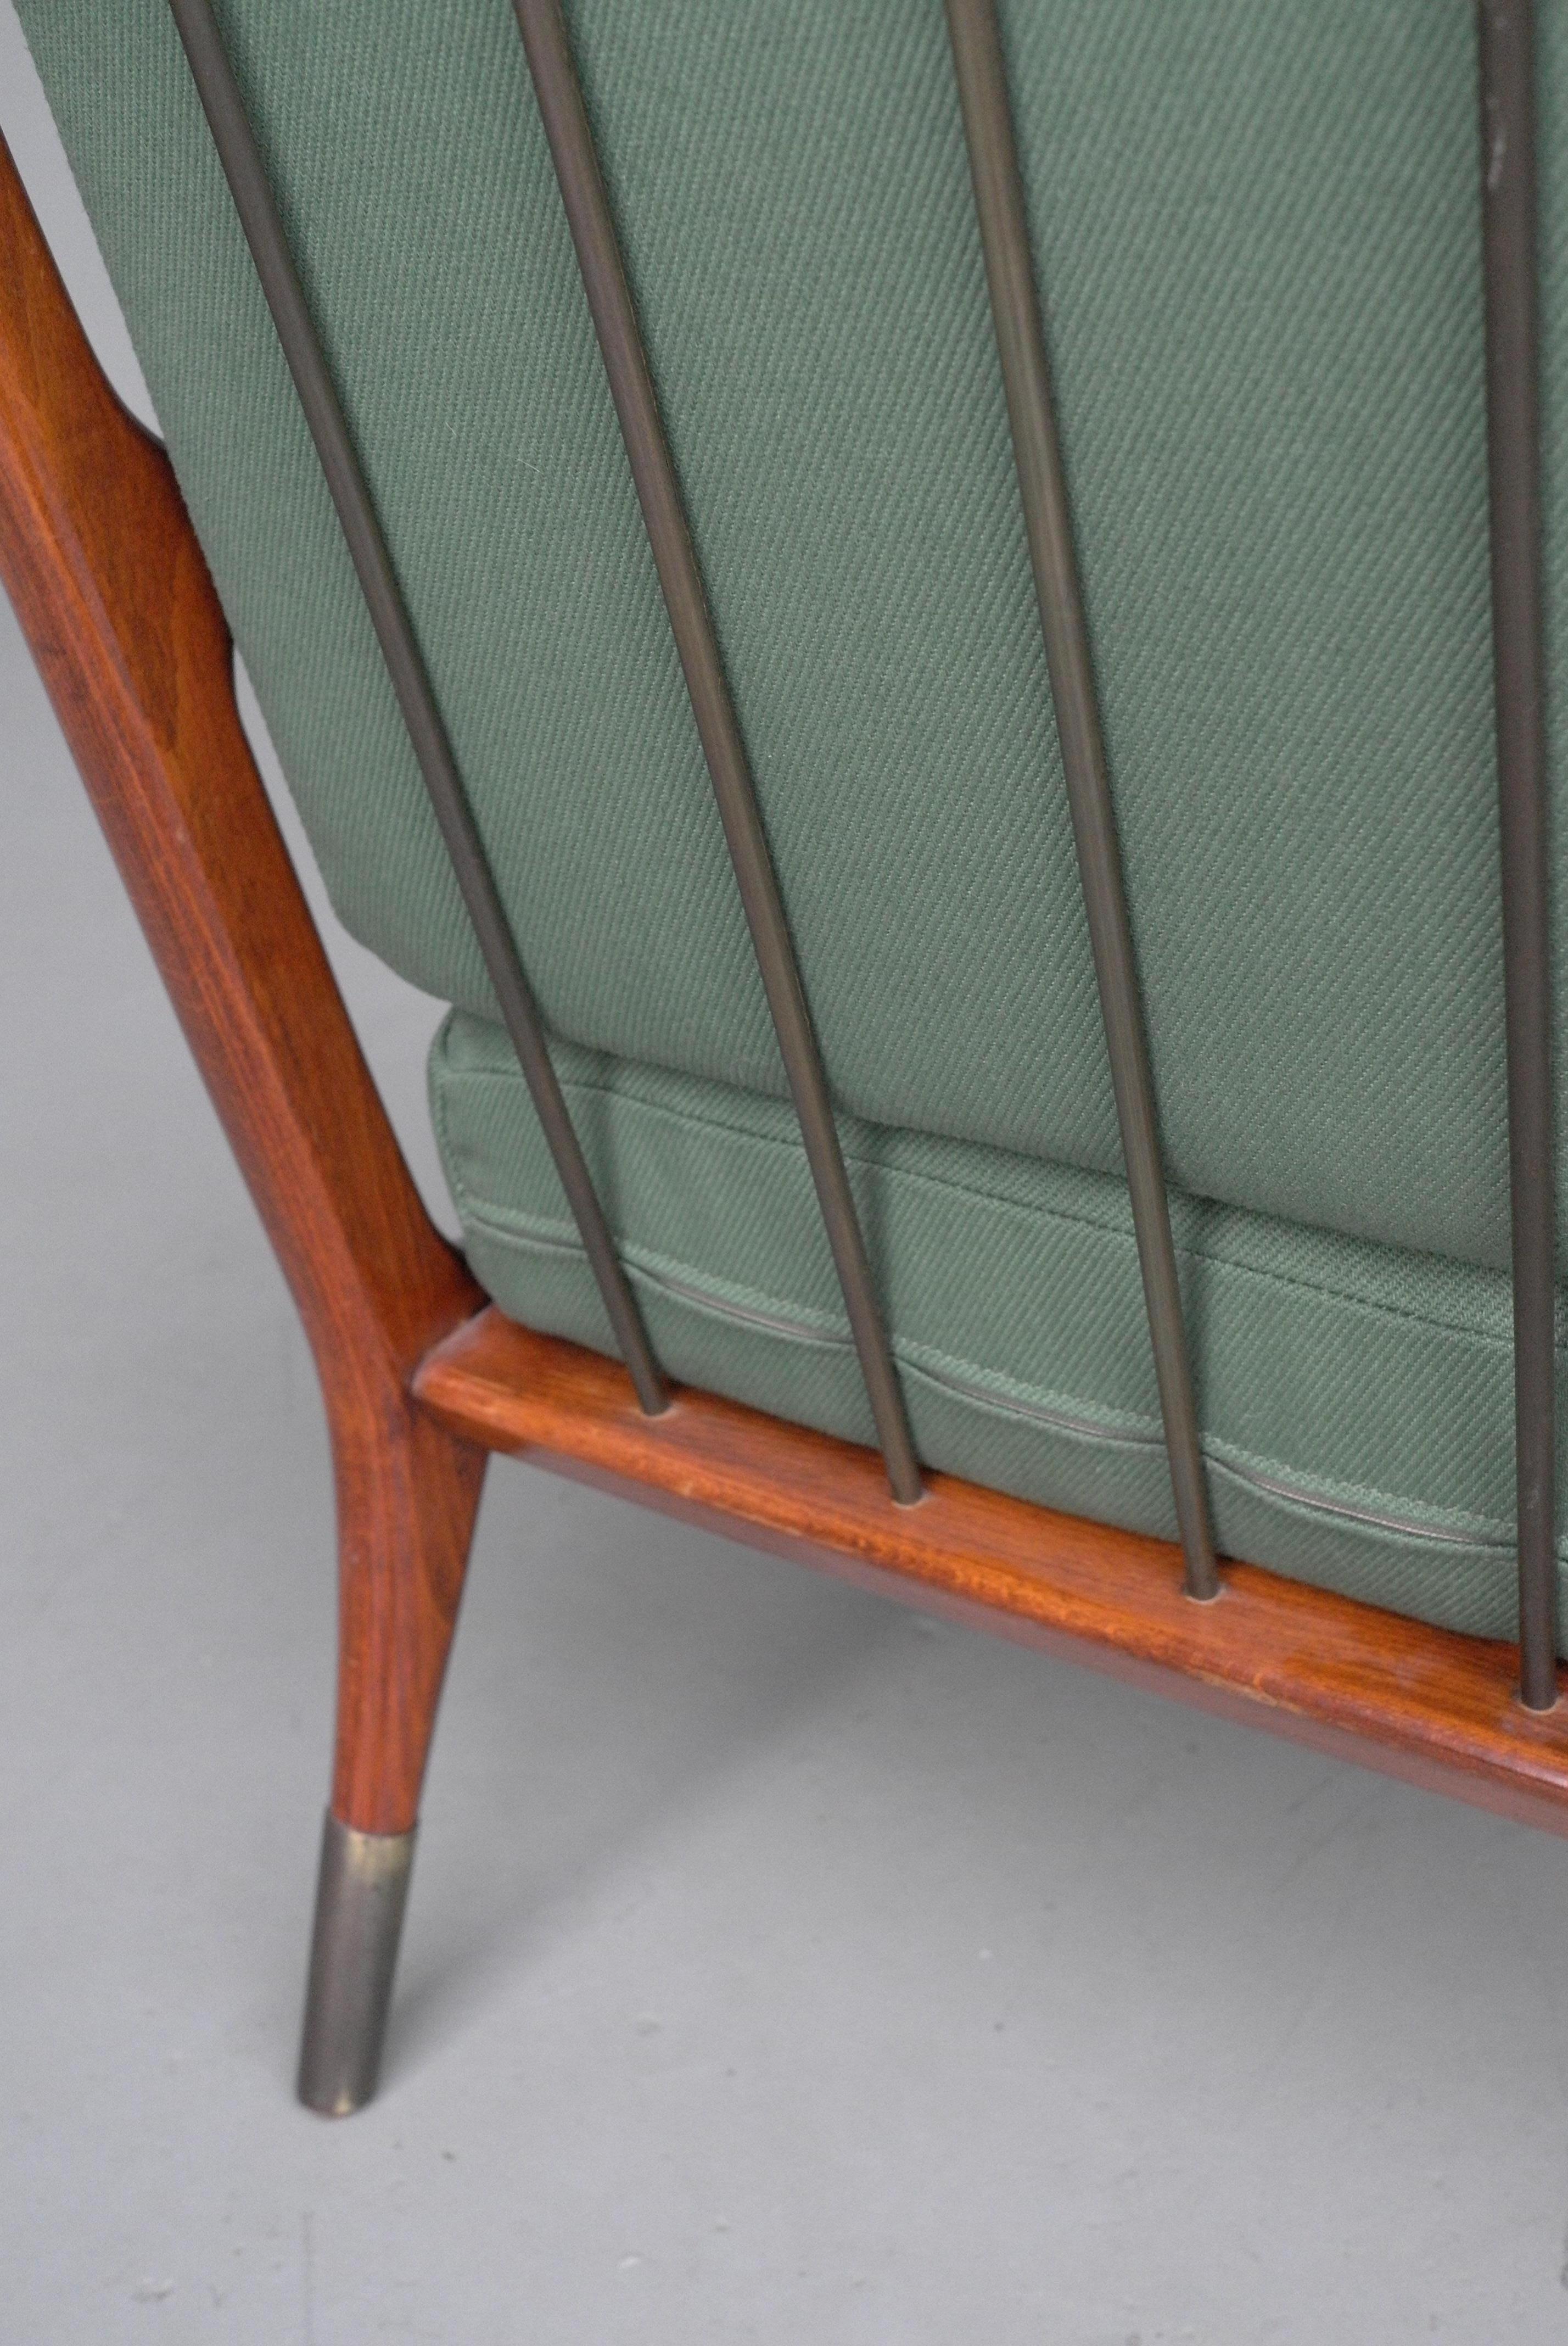 Schlanker Loungesessel aus Holz mit feinen Messingfüßen und Rückenlehne aus Messing.

Vor kurzem neu mit grünem Stoff bezogen. Hergestellt in Italien, um 1955.